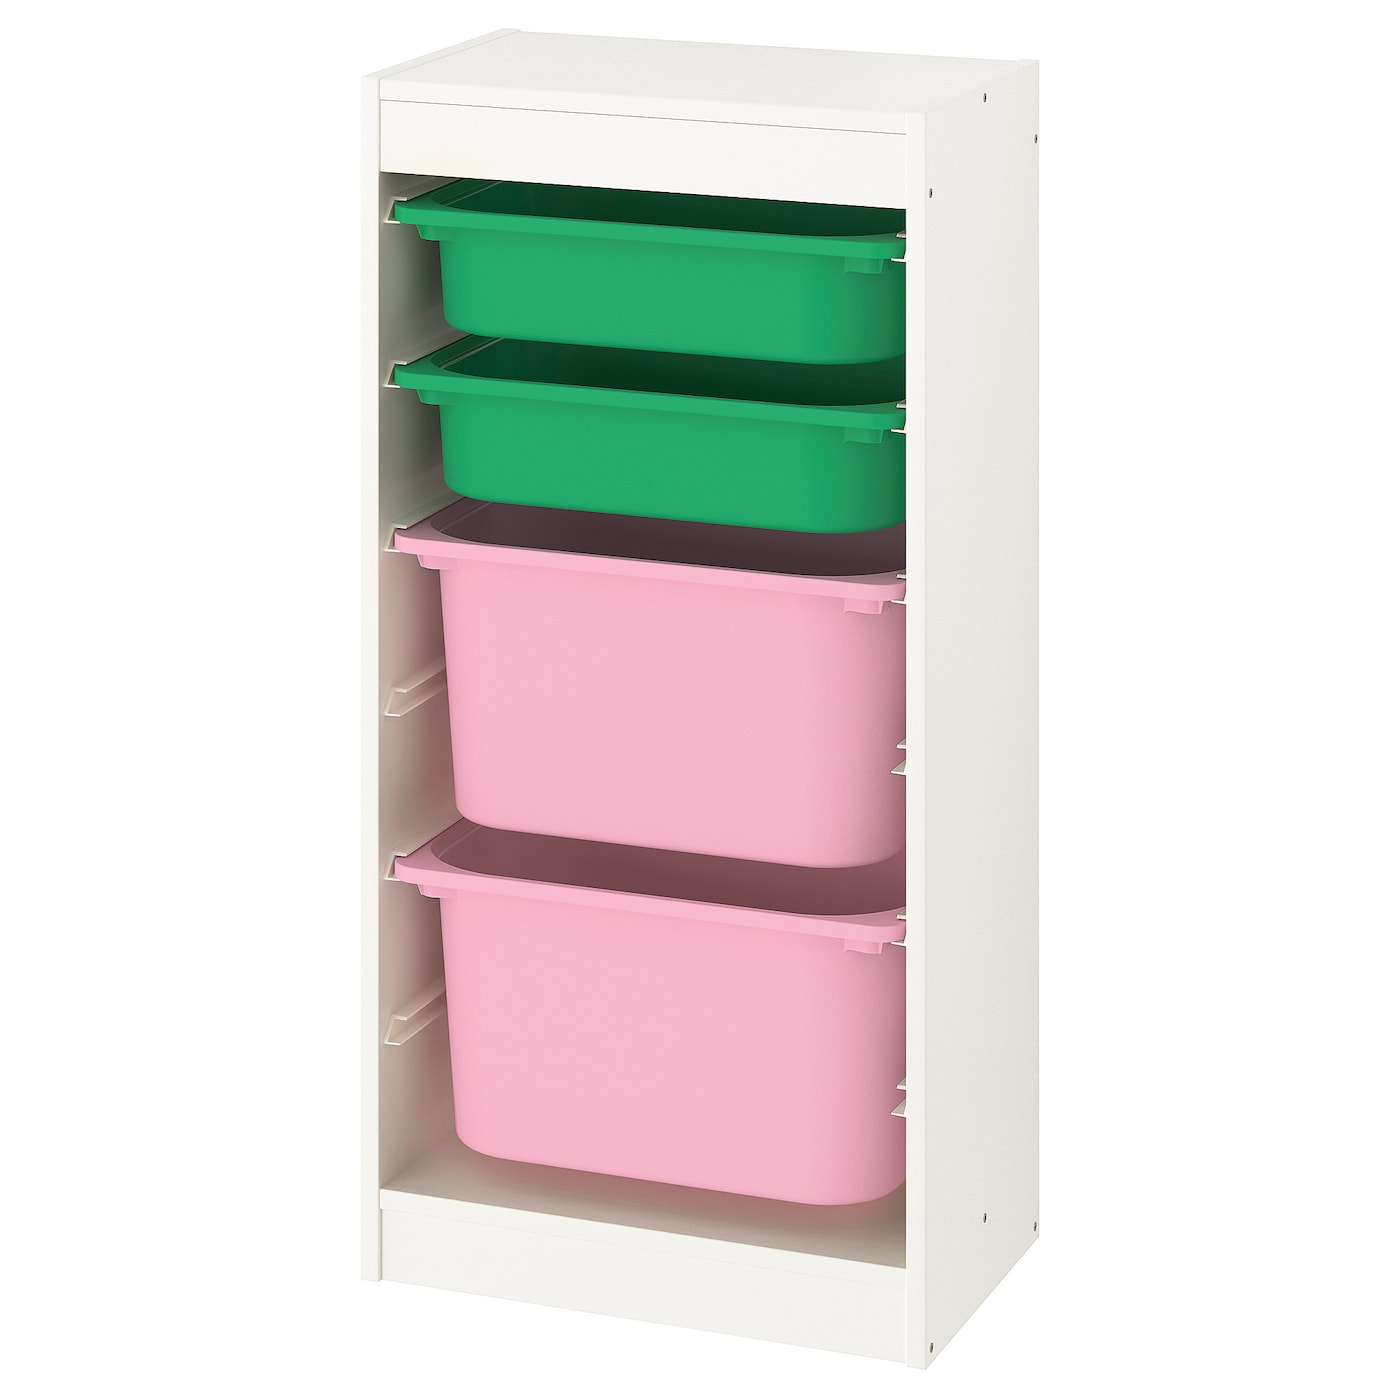 Стеллаж - IKEA TROFAST, 46х30х94 см, белый/зеленый/розовый, ТРУФАСТ ИКЕА